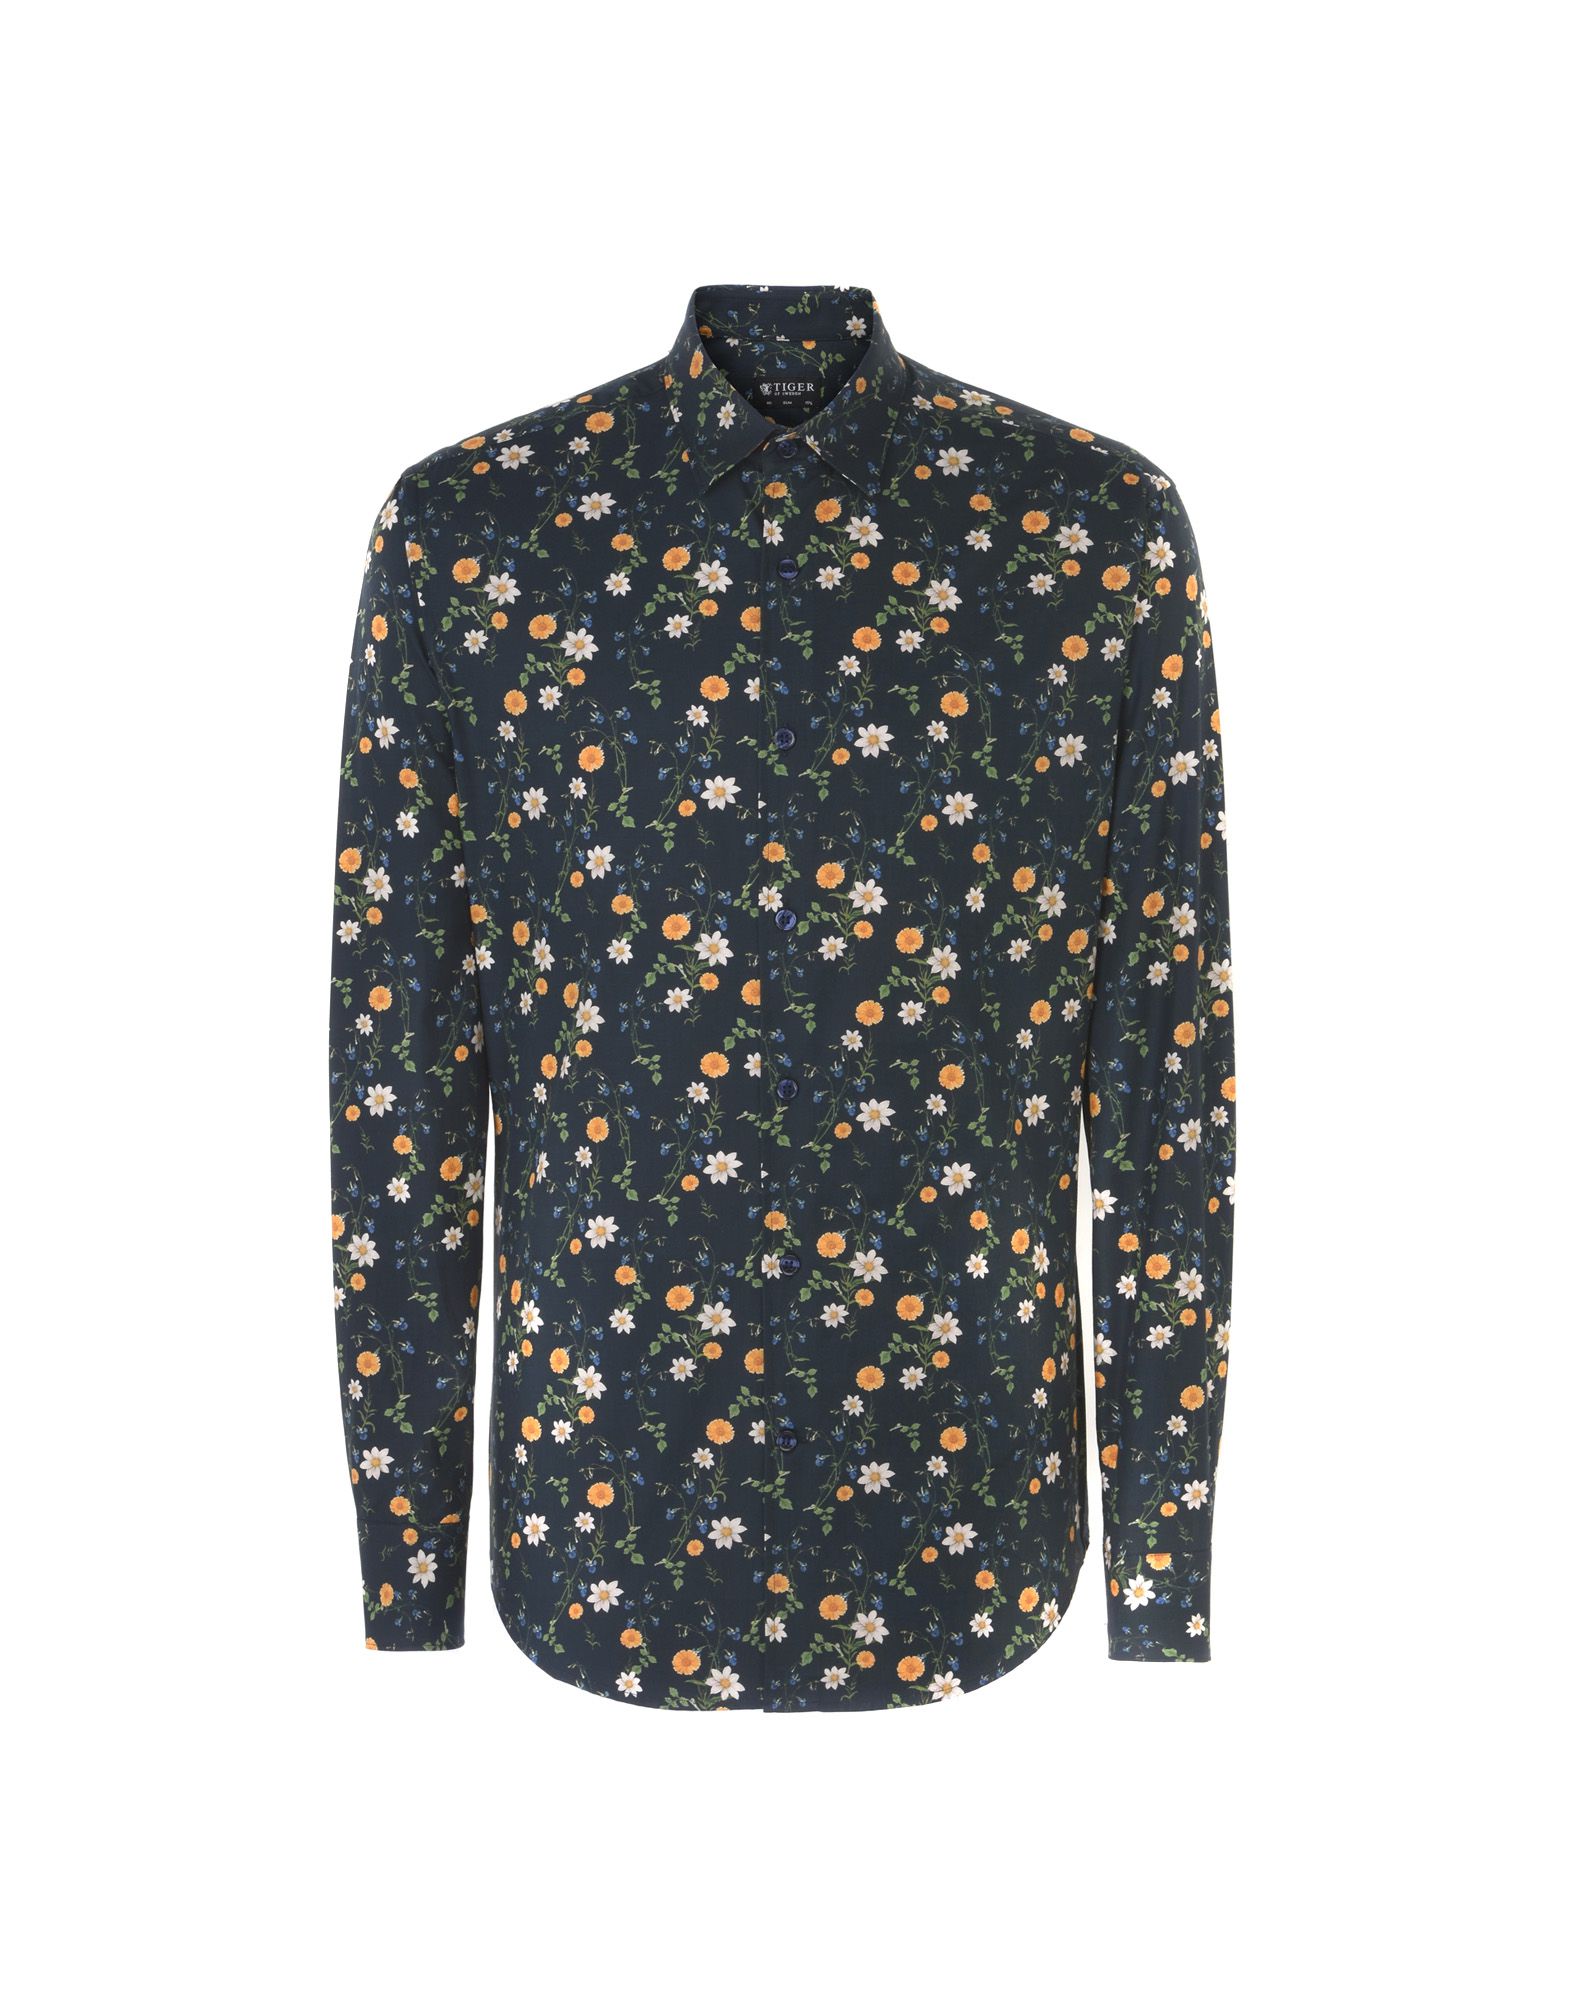 TIGER OF SWEDEN Patterned shirt,38739681LE 5